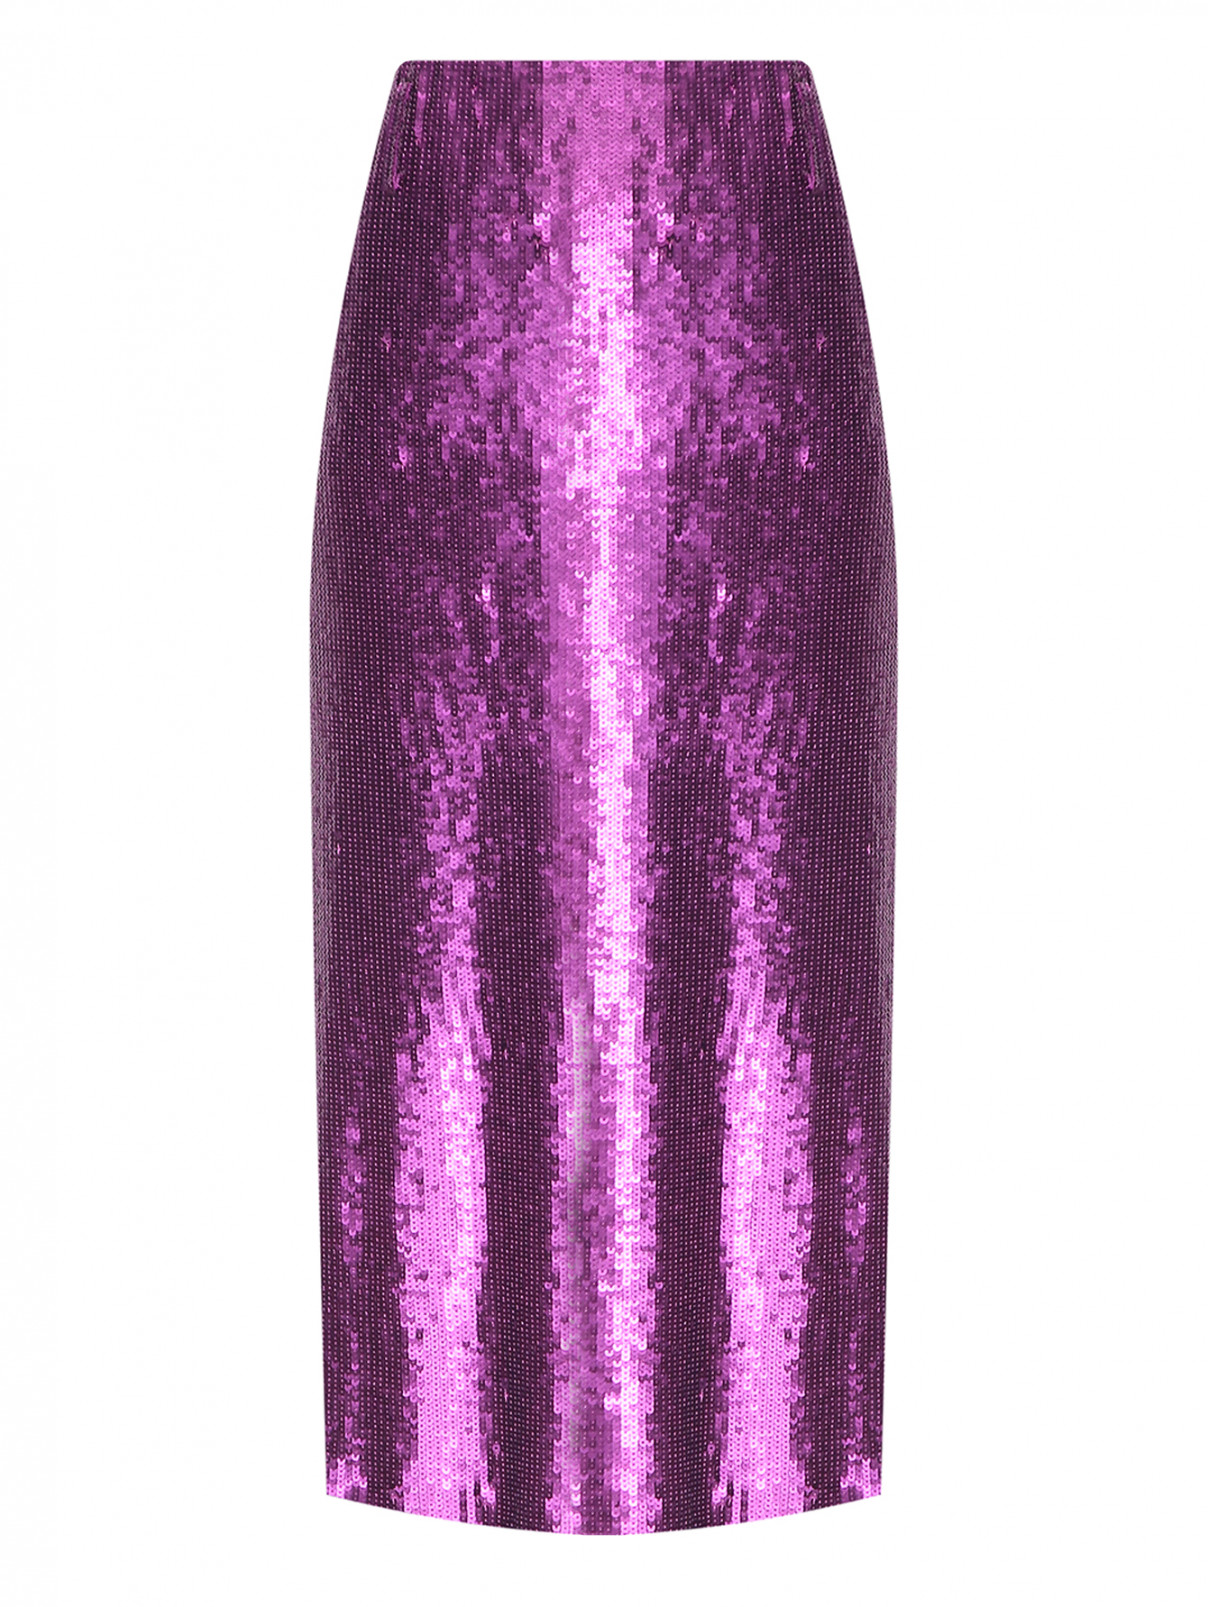 Юбка-миди из пайеток с разрезом Luisa Spagnoli  –  Общий вид  – Цвет:  Фиолетовый